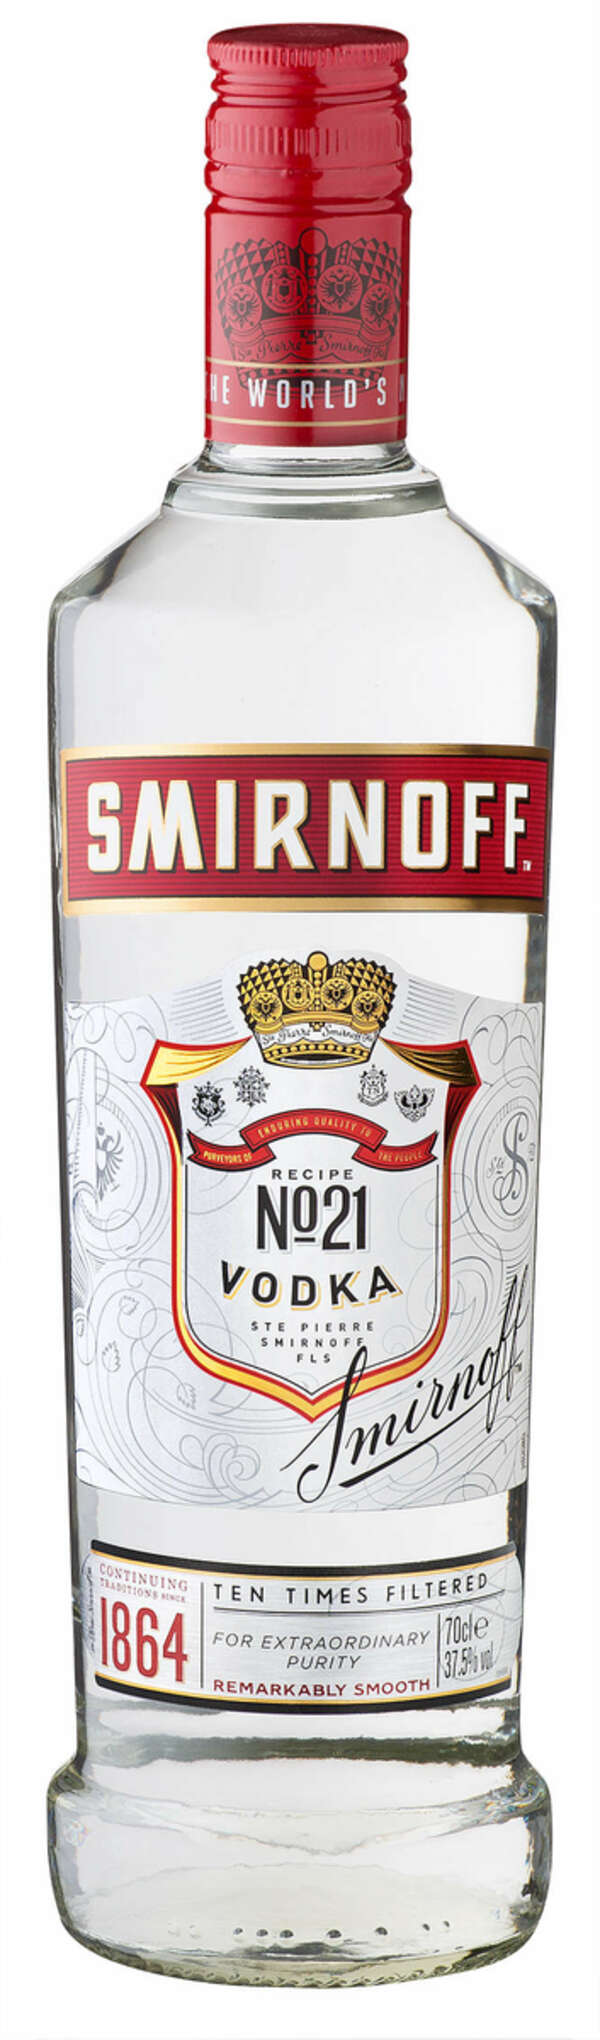 Bild 1 von SMIRNOFF Vodka No. 21